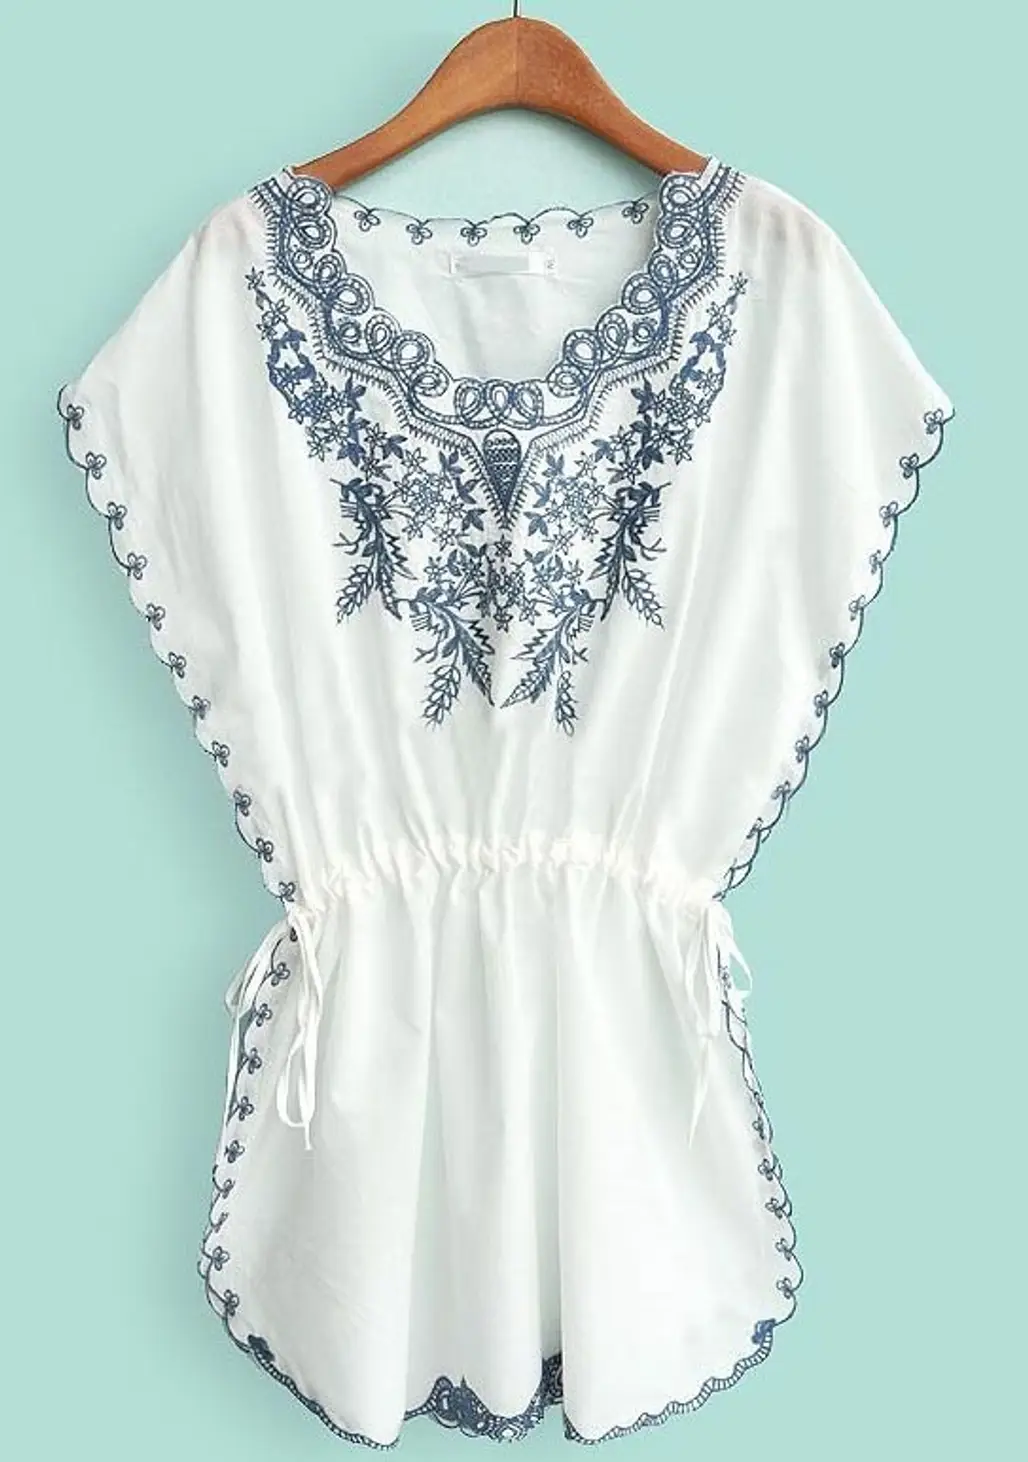 white,clothing,sleeve,blouse,fashion accessory,